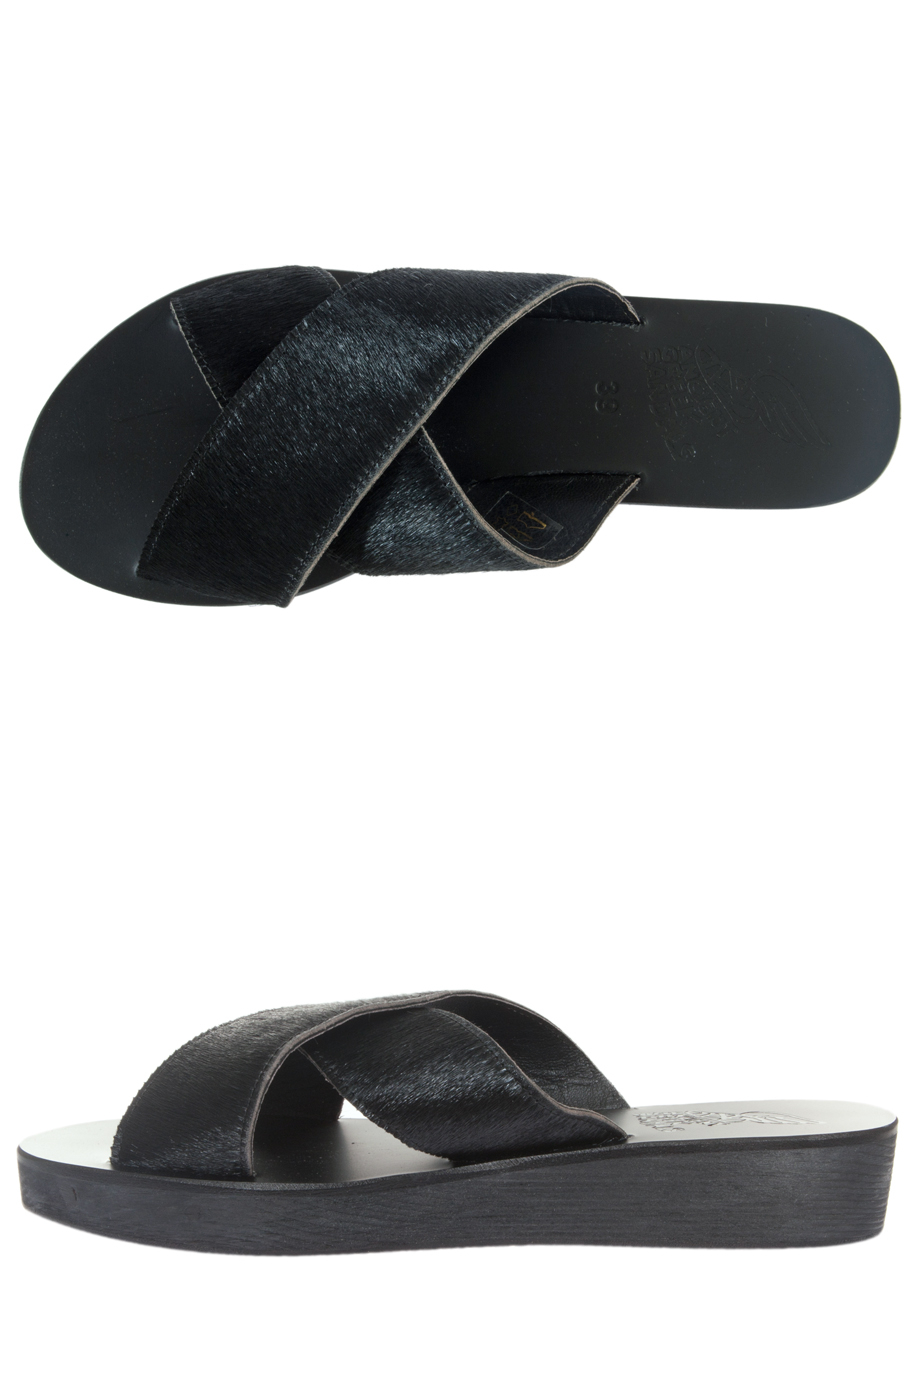 ancient-greek-sandals-black-pony-thais-sandal-product-1-007070682 ...